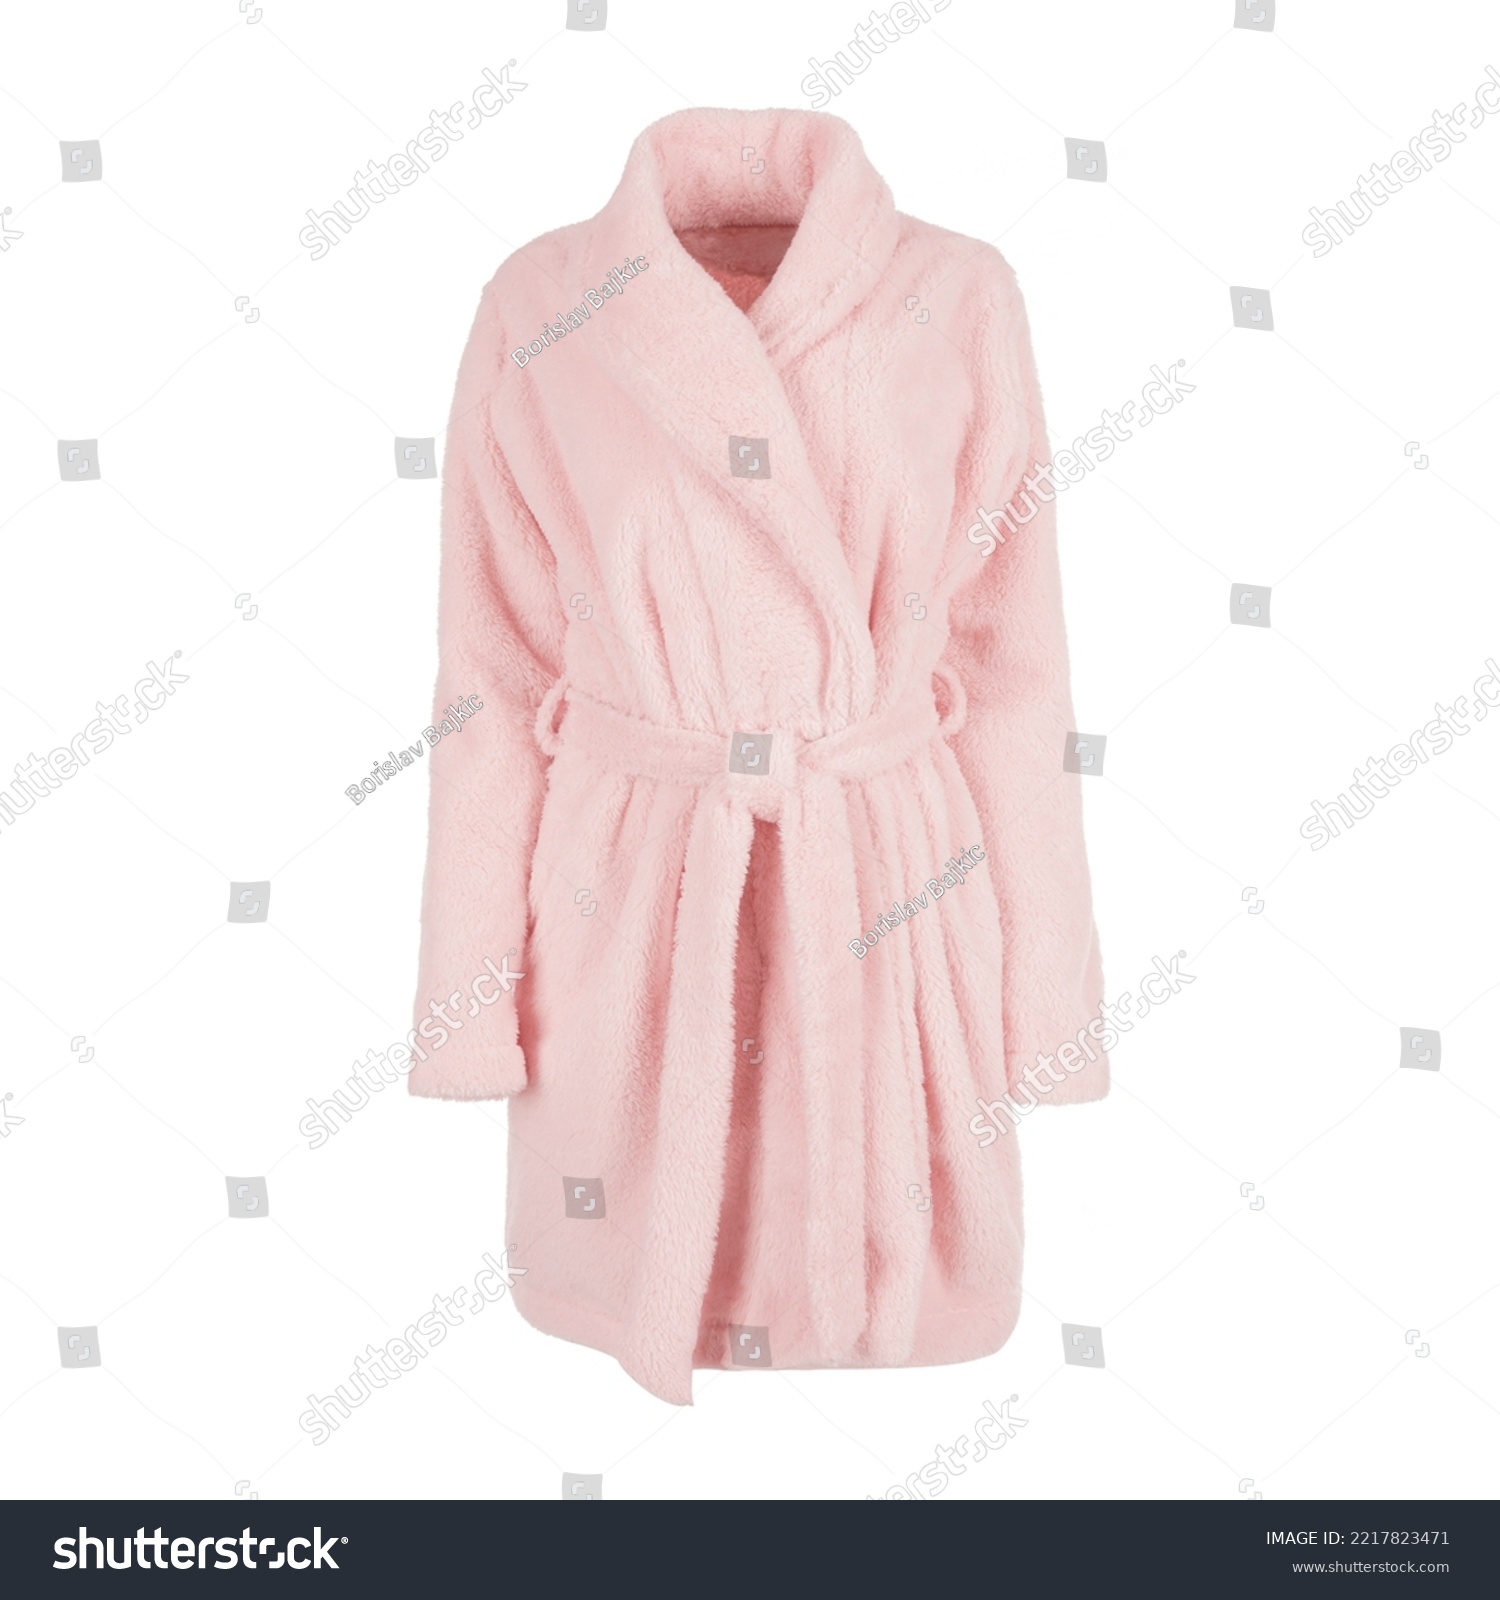 Women's pink bath robe with belt #2217823471